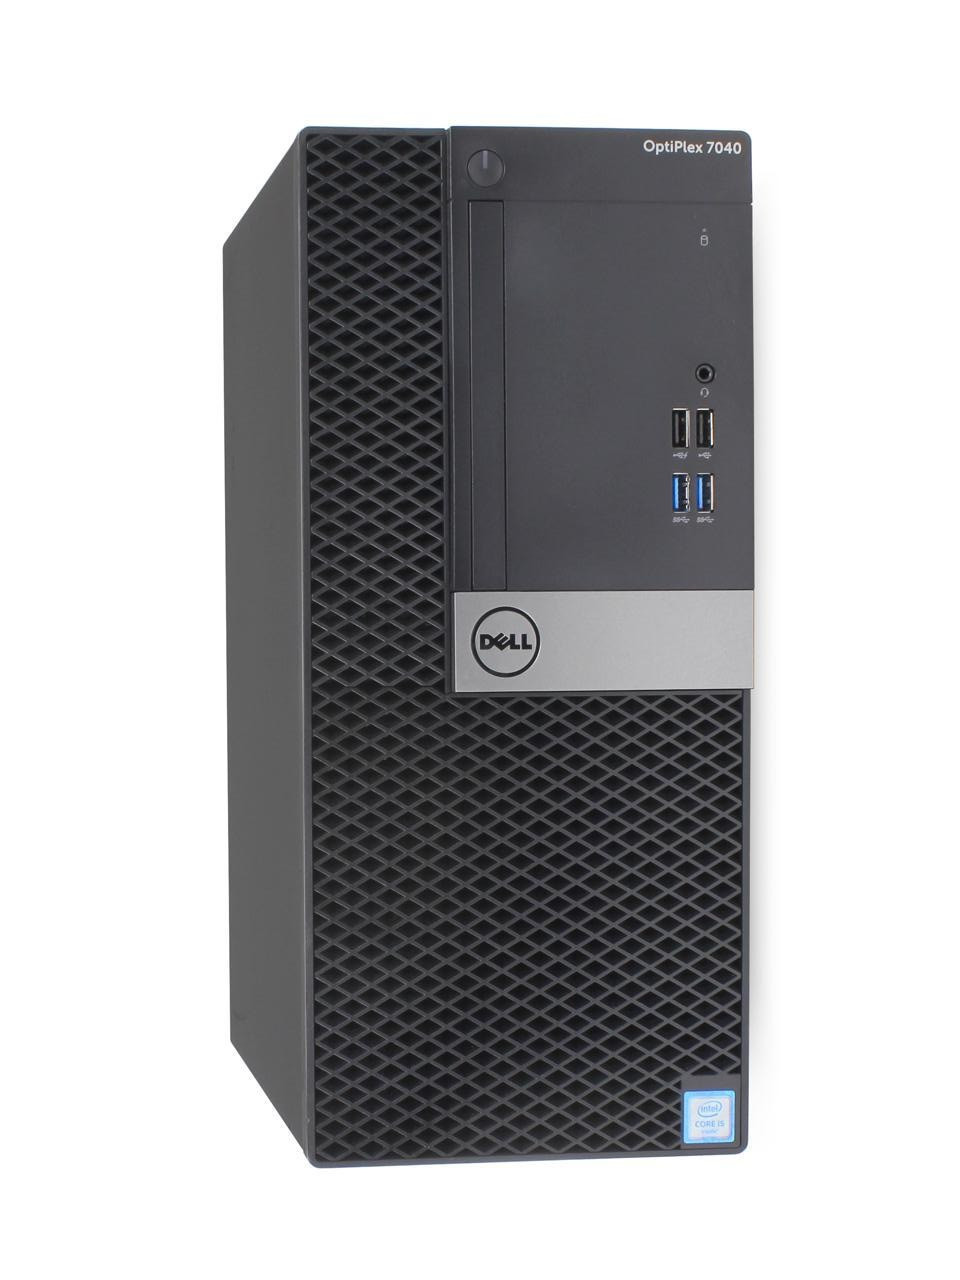 Dell Optiplex 7040 Desktop Intel Core i7 3.40 GHz 16GB 250 GB Windows 10 Pro | Refurbished